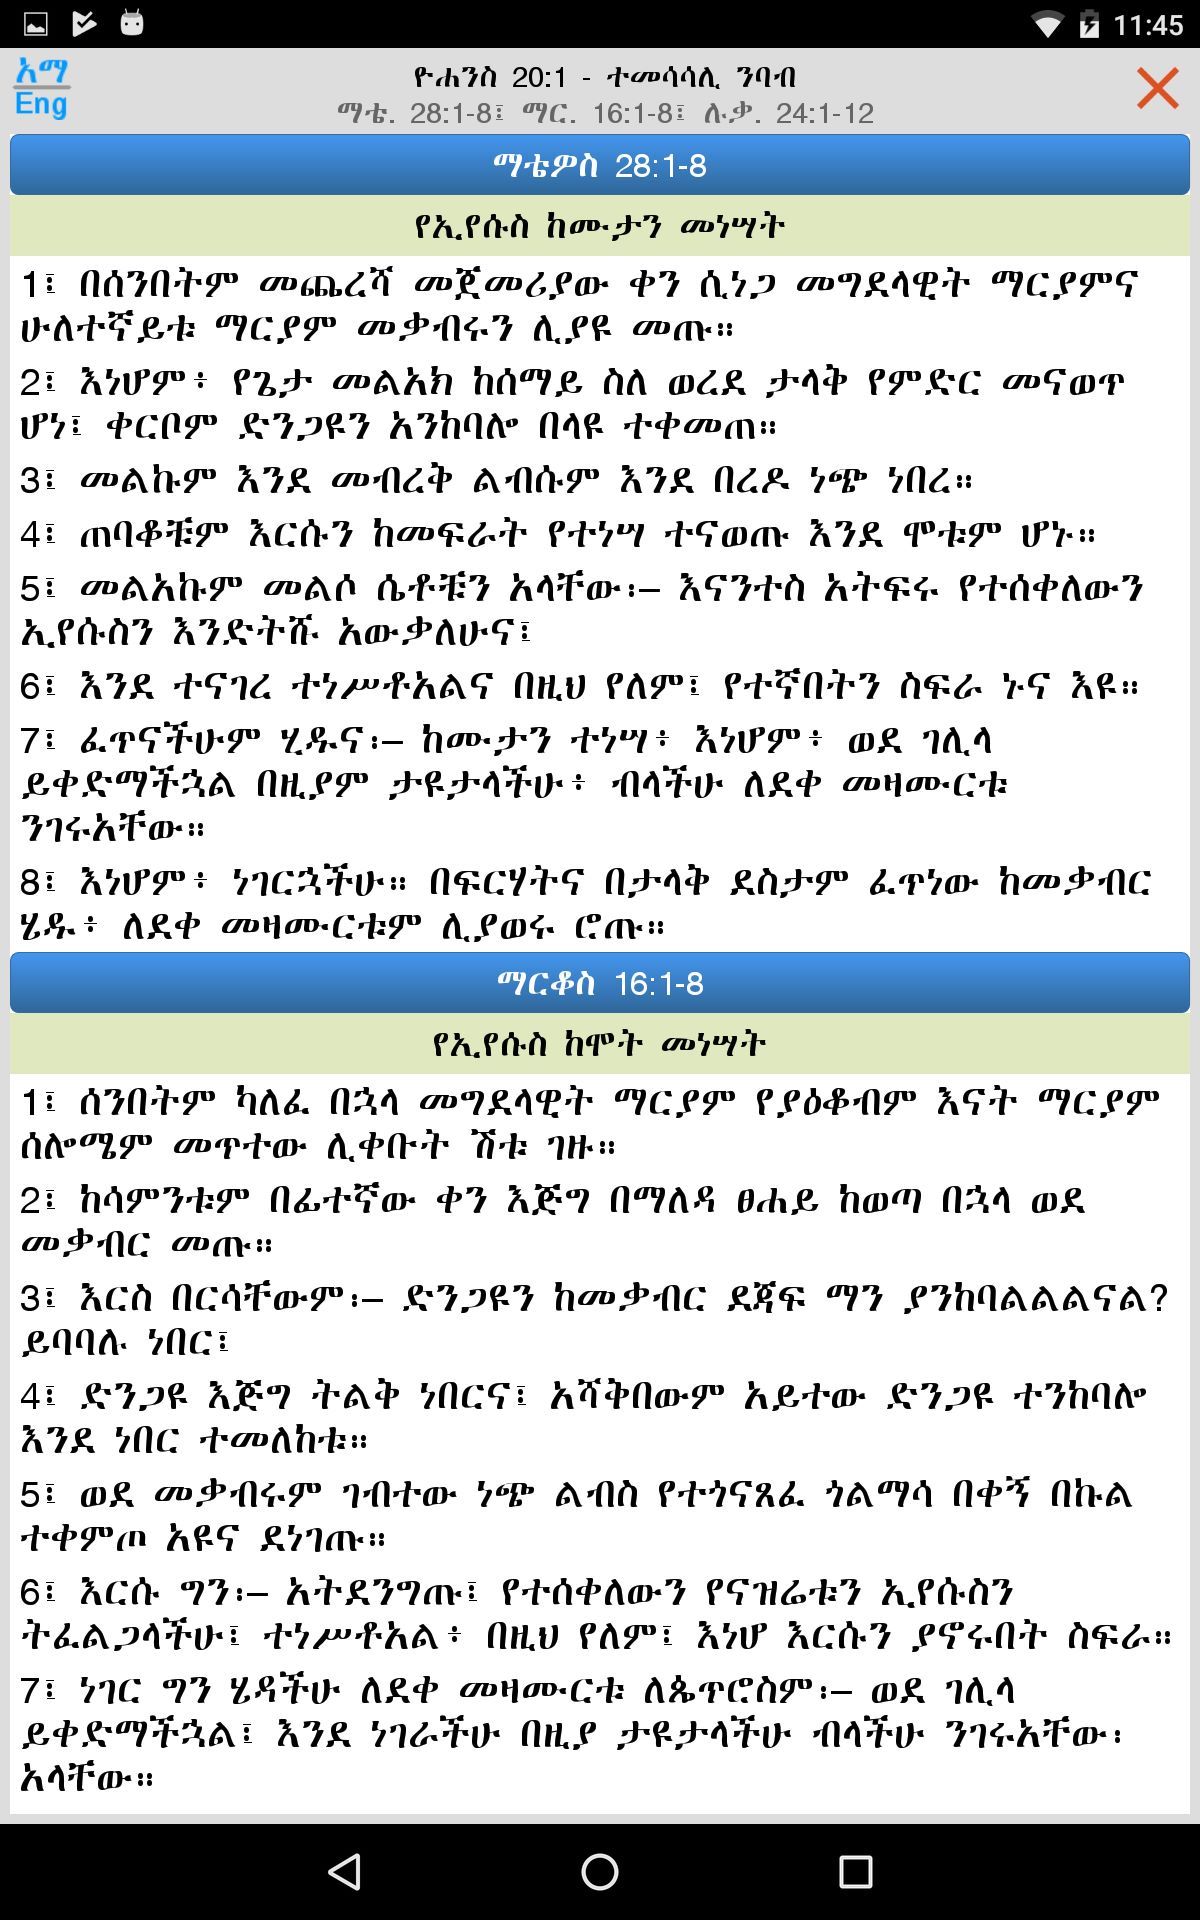 Amharic Bible with KJV and WEB - Bible Study Tool, aka Hiyaw Qal